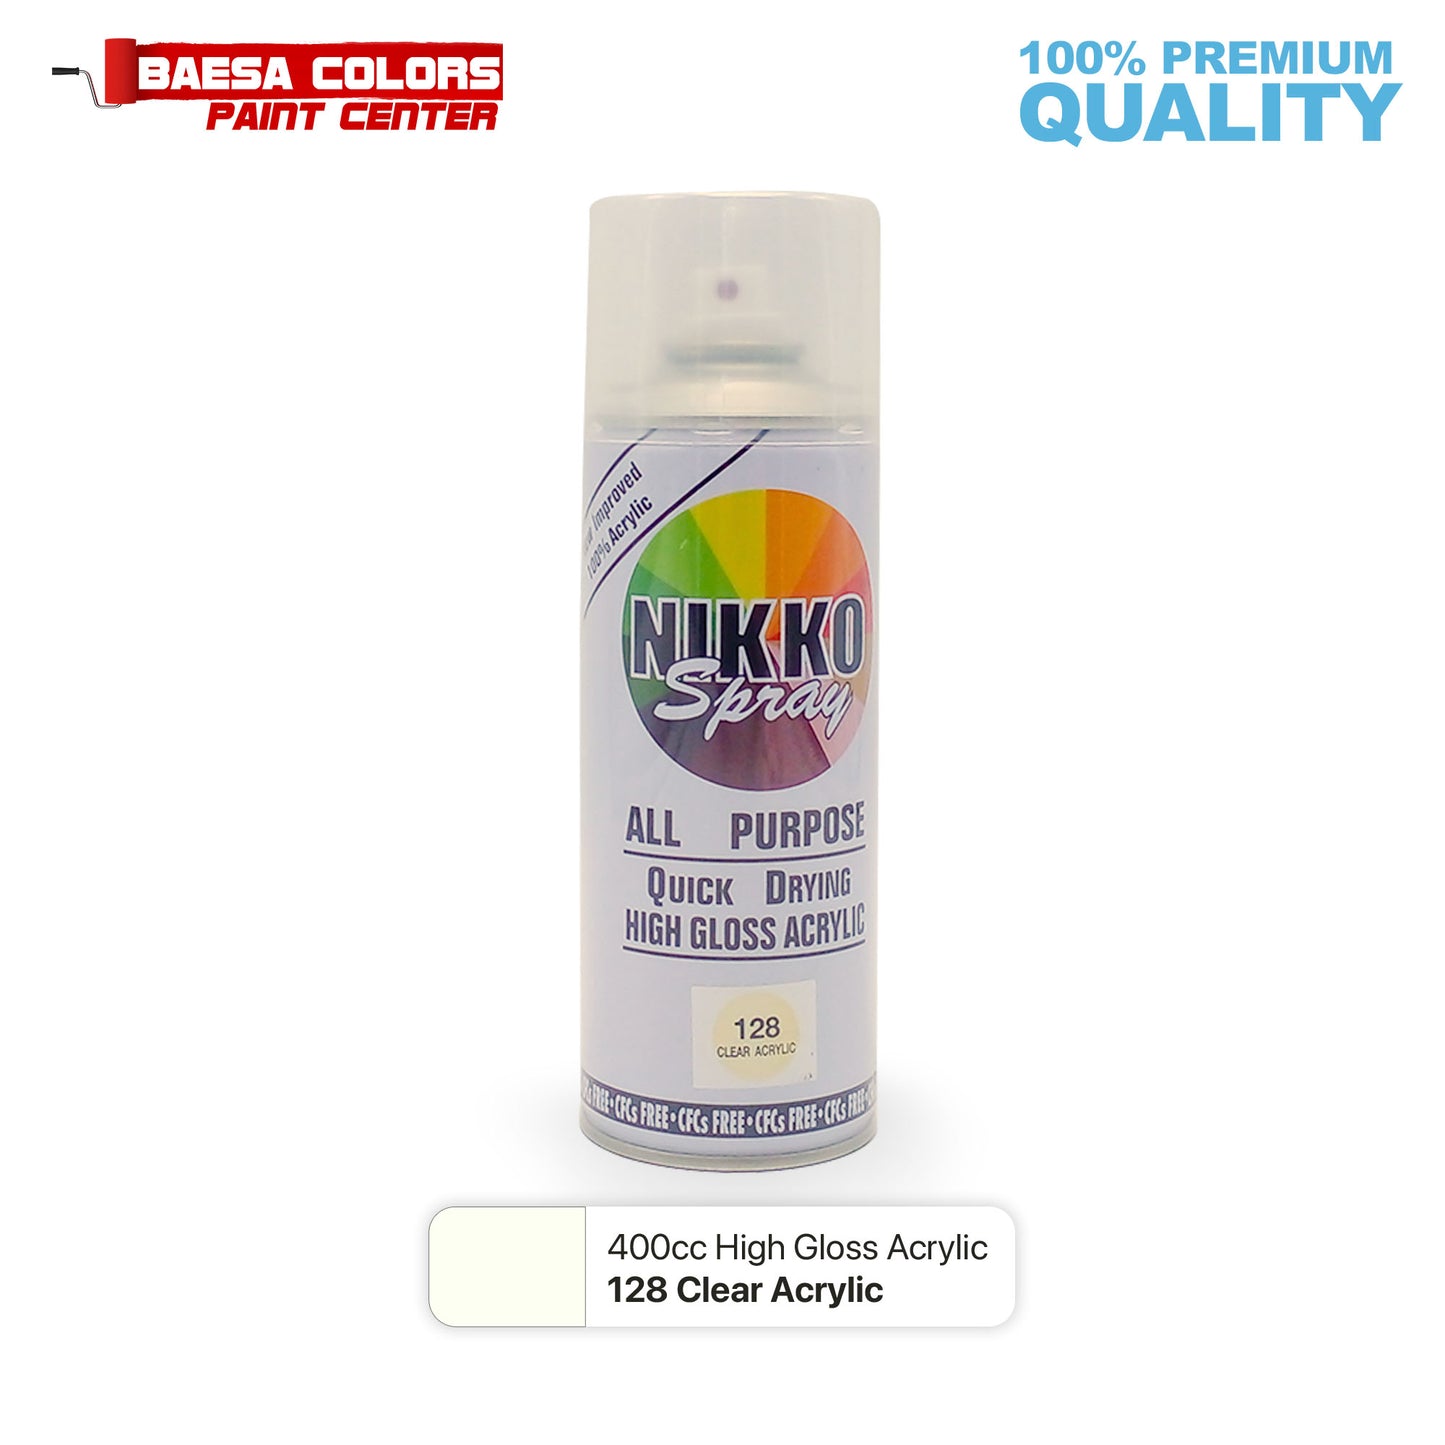 Nikko Acrylic-Based Spray Paint 128 Clear Acrylic 400cc